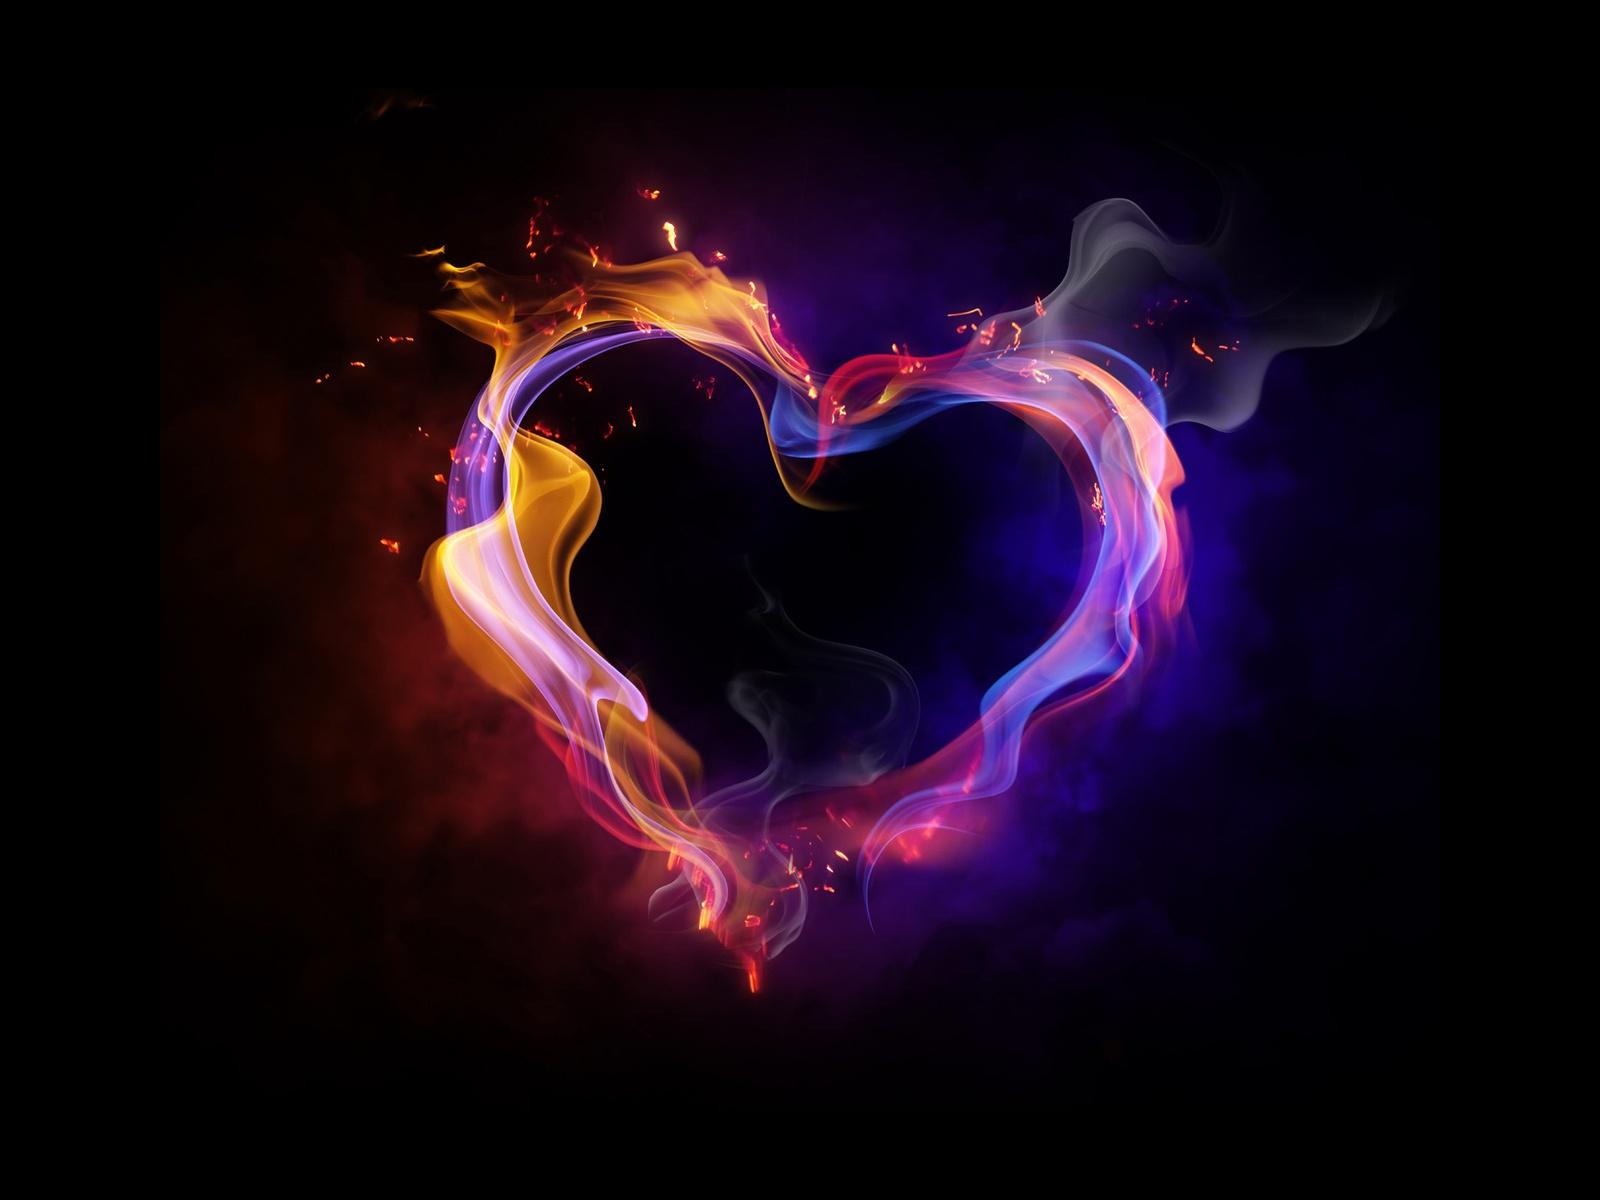 Fire Heart Love HD Wallpaper 1080p2013hdwallpaper.blogspot.com